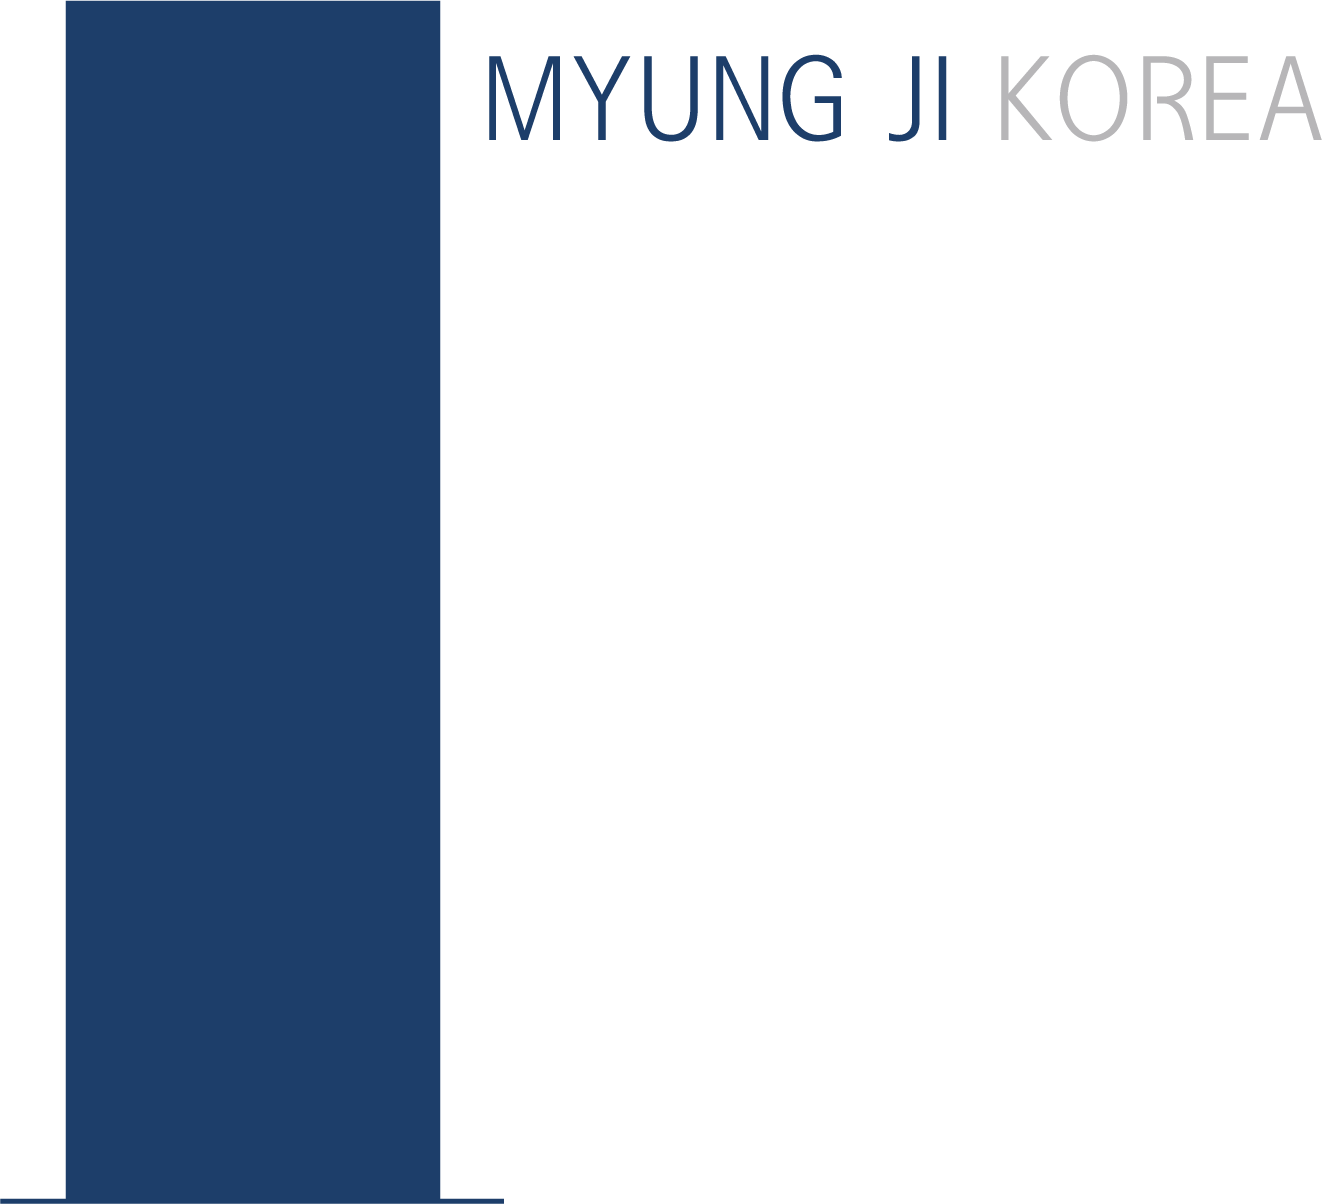 MyungJi Korea logo image